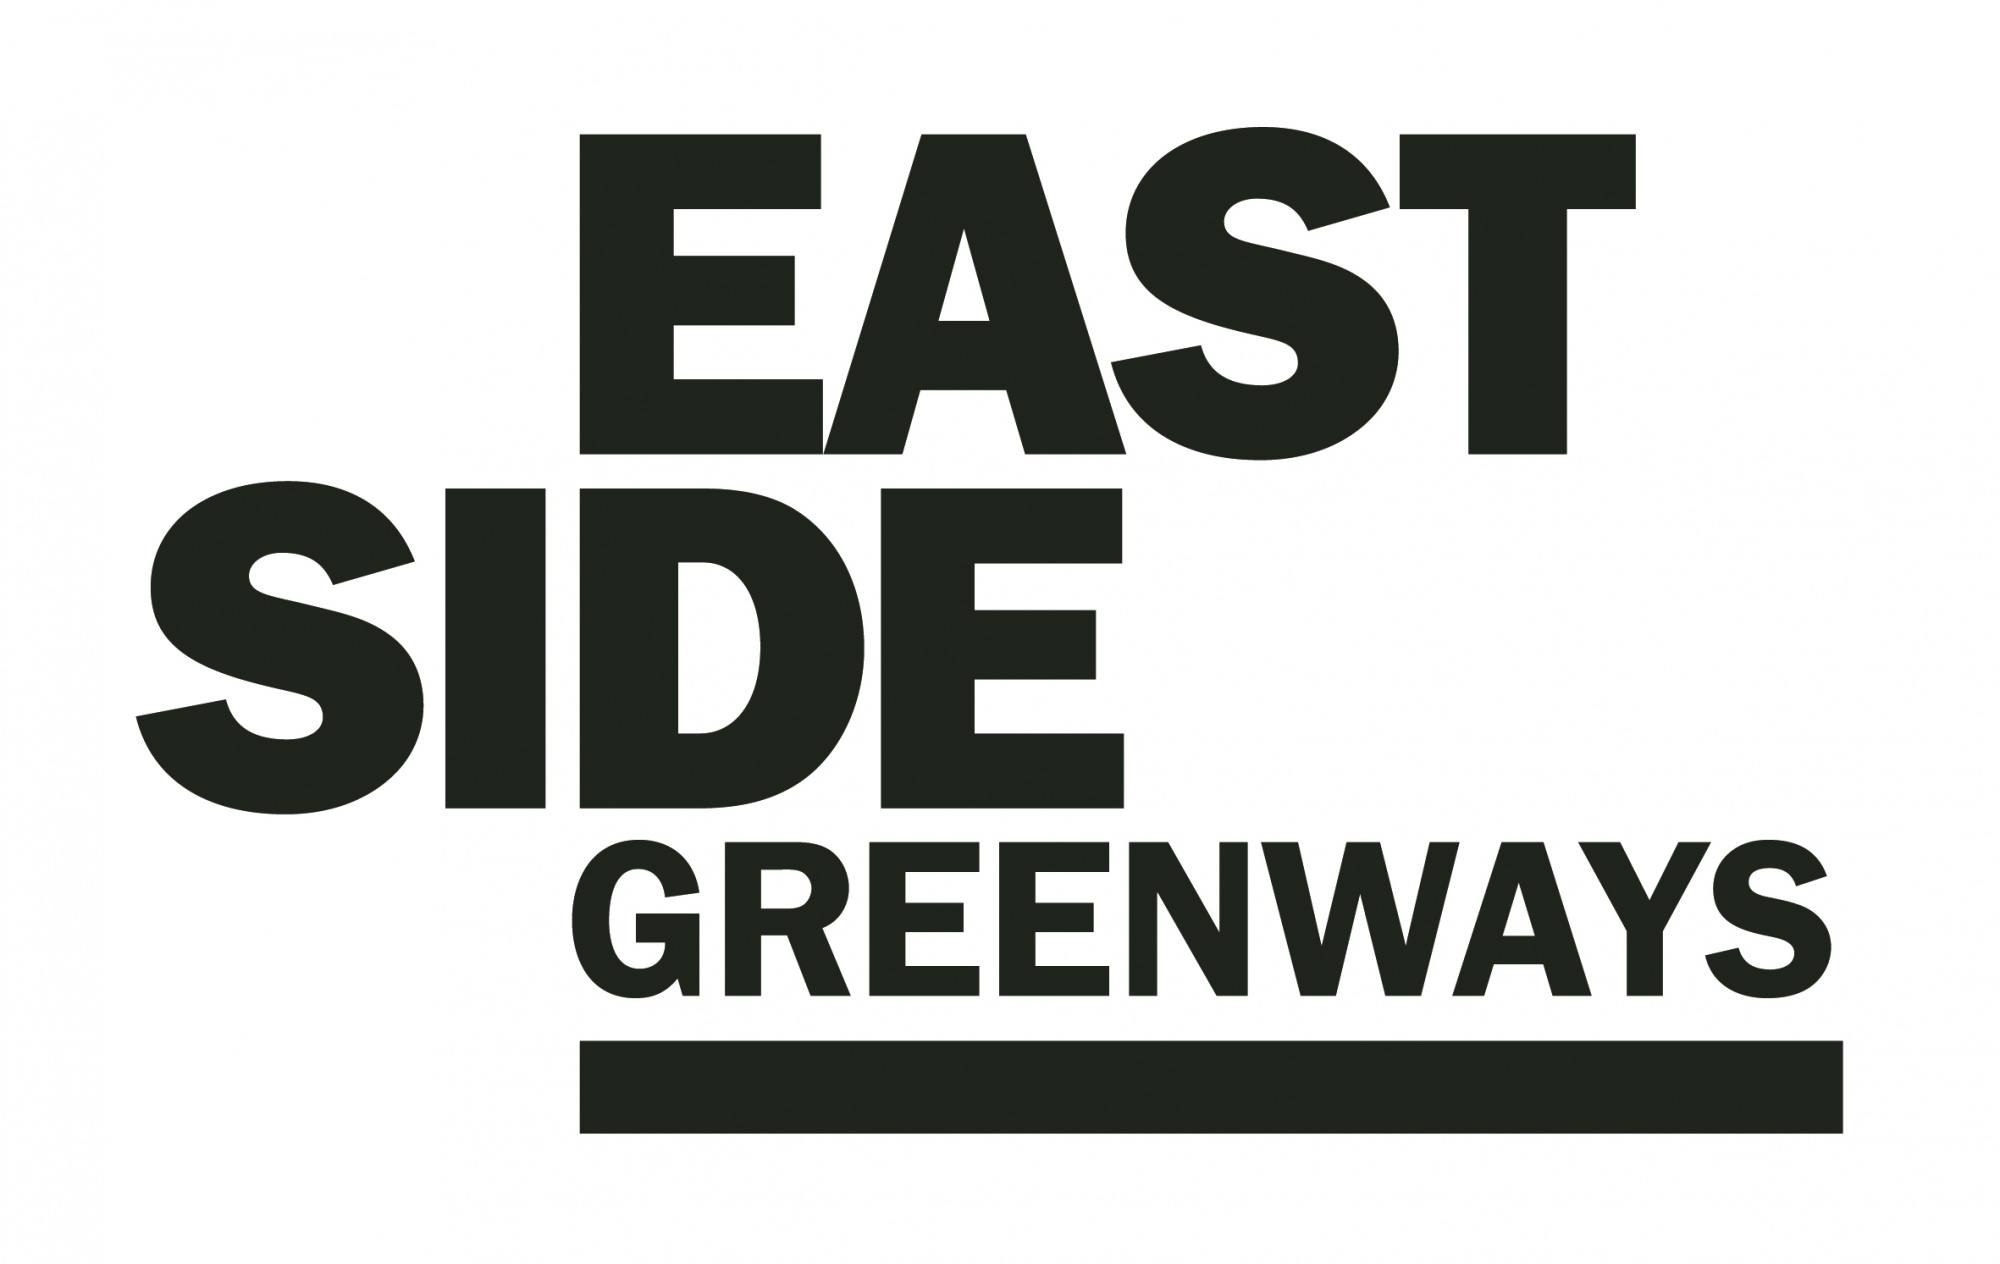 EastSide Greenways